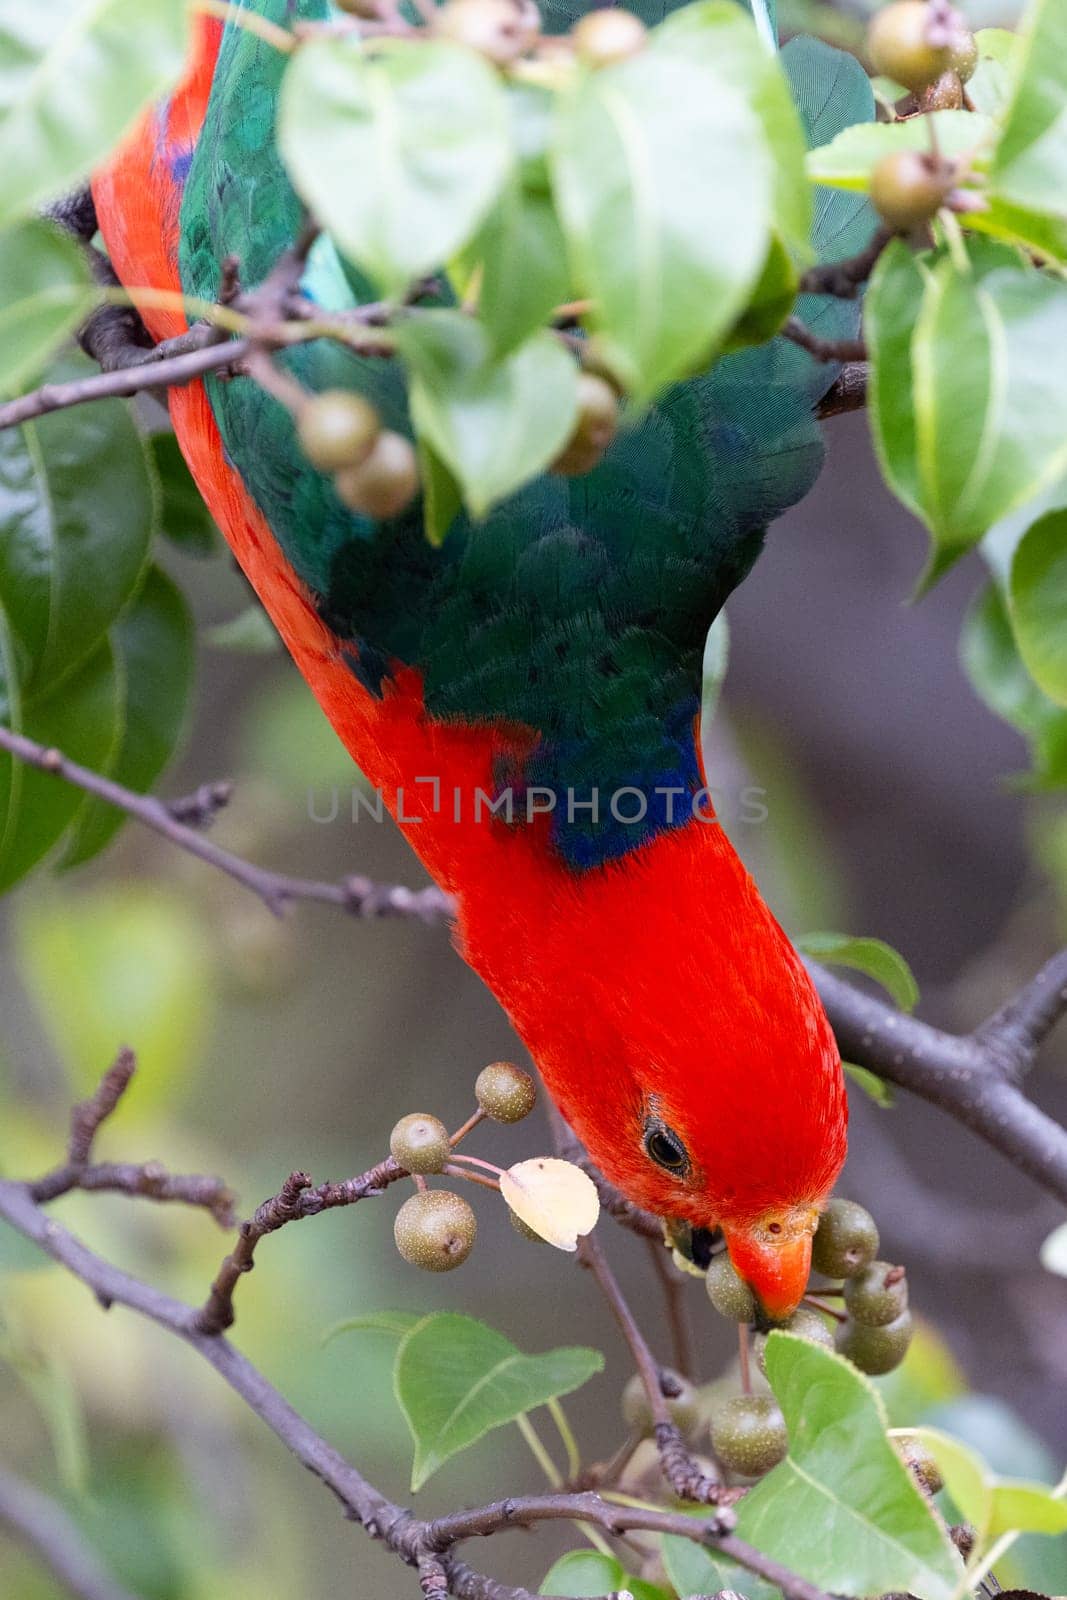 Australian King Parrot in Victoria Australia by FiledIMAGE